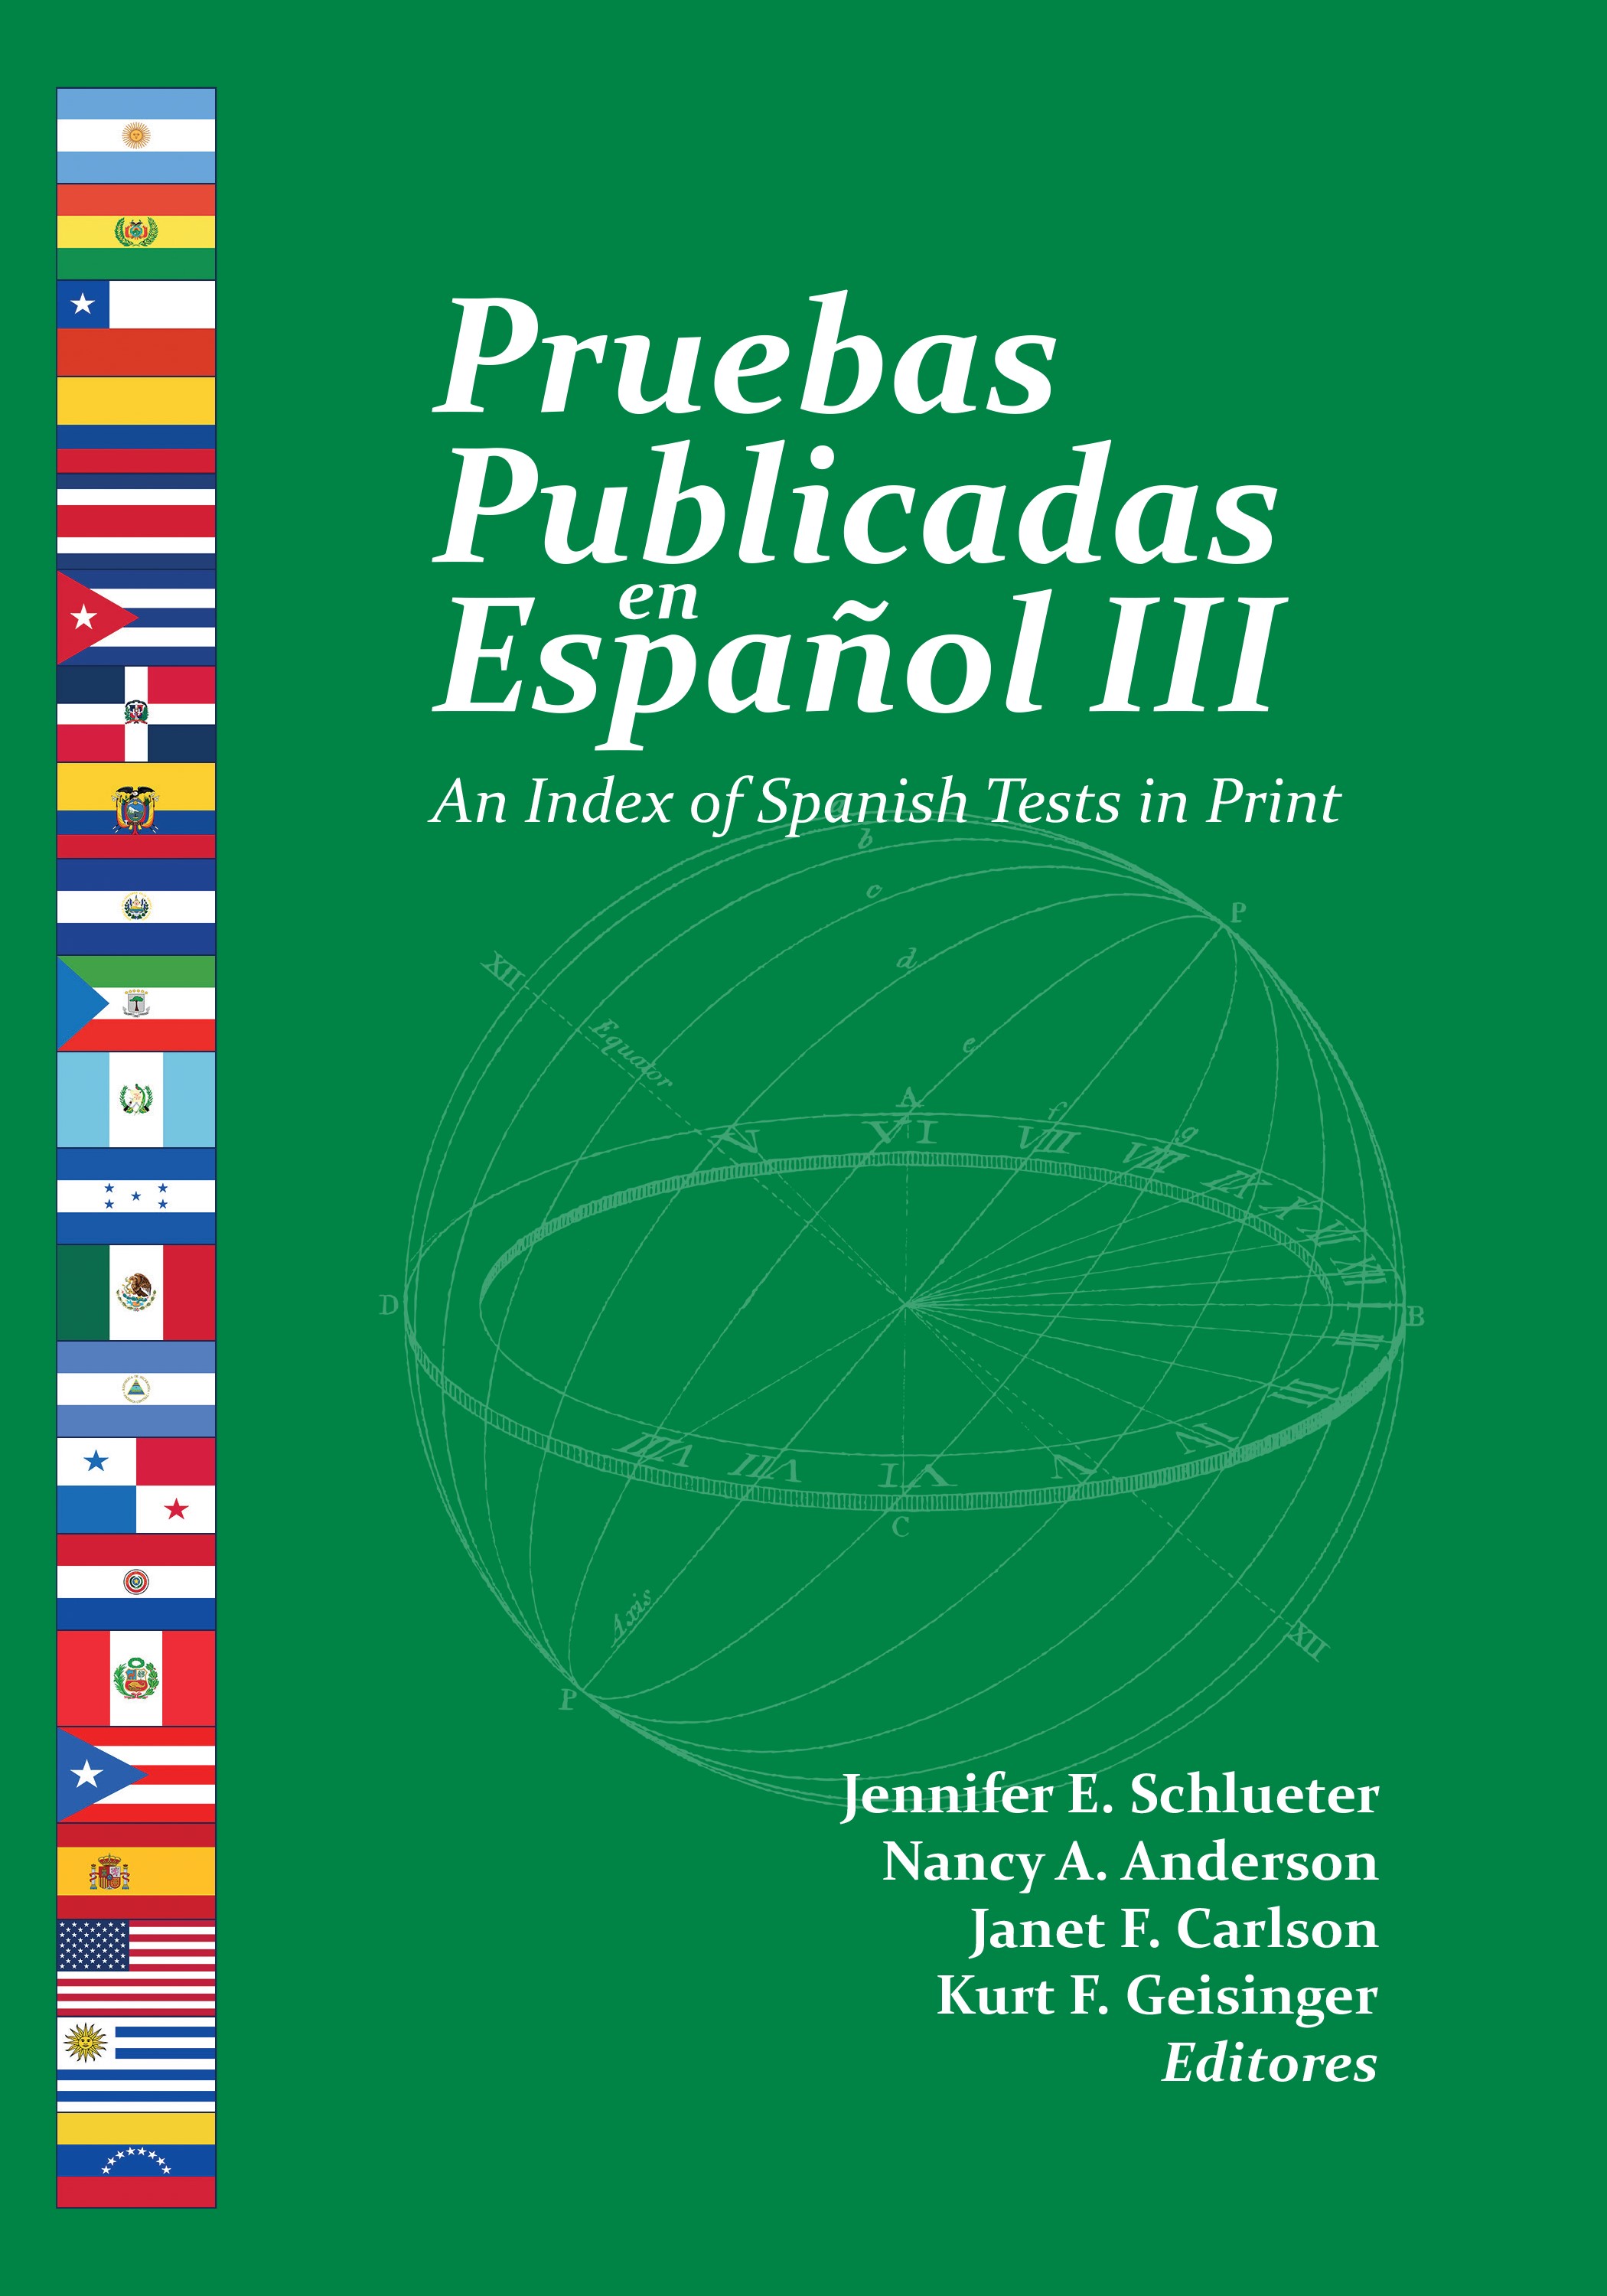 Book cover for 'Pruebas Publicadas en Español III'